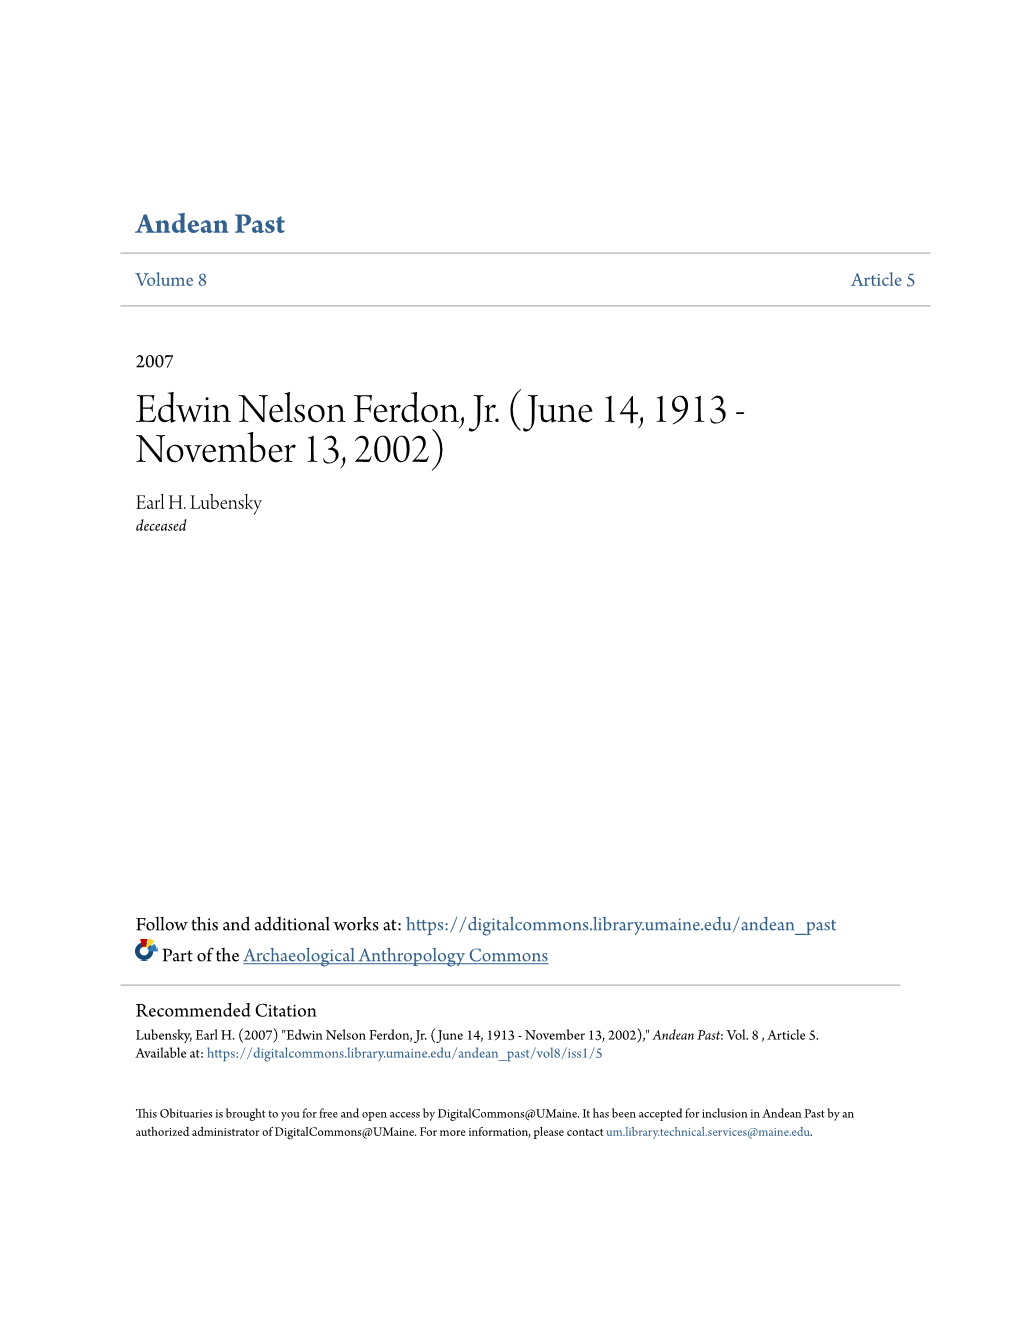 Edwin Nelson Ferdon, Jr. (June 14, 1913 - November 13, 2002) Earl H